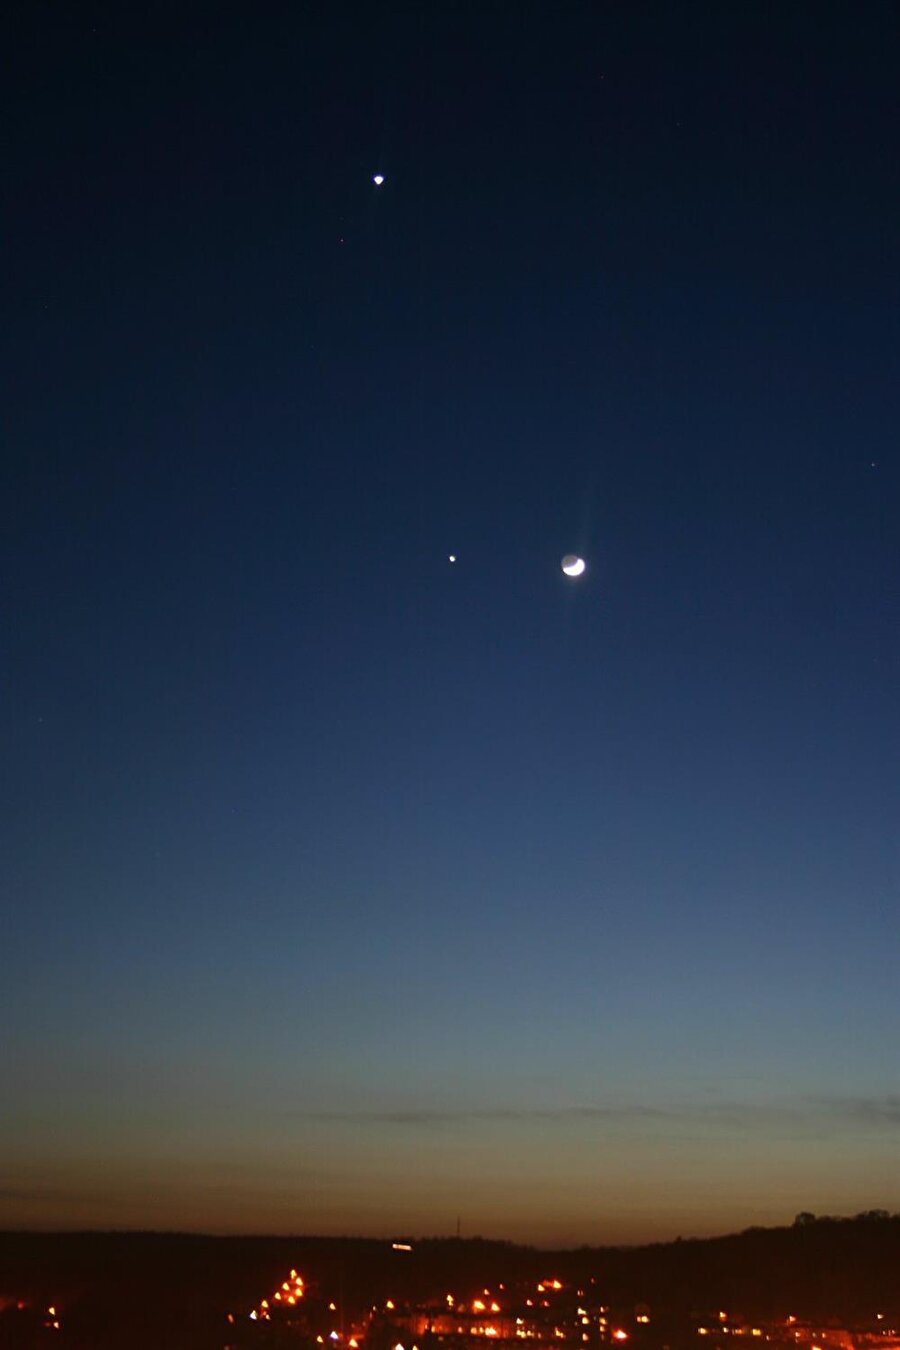 13 Kasım - Venüs ve Jupiter'in Yaklaşması
